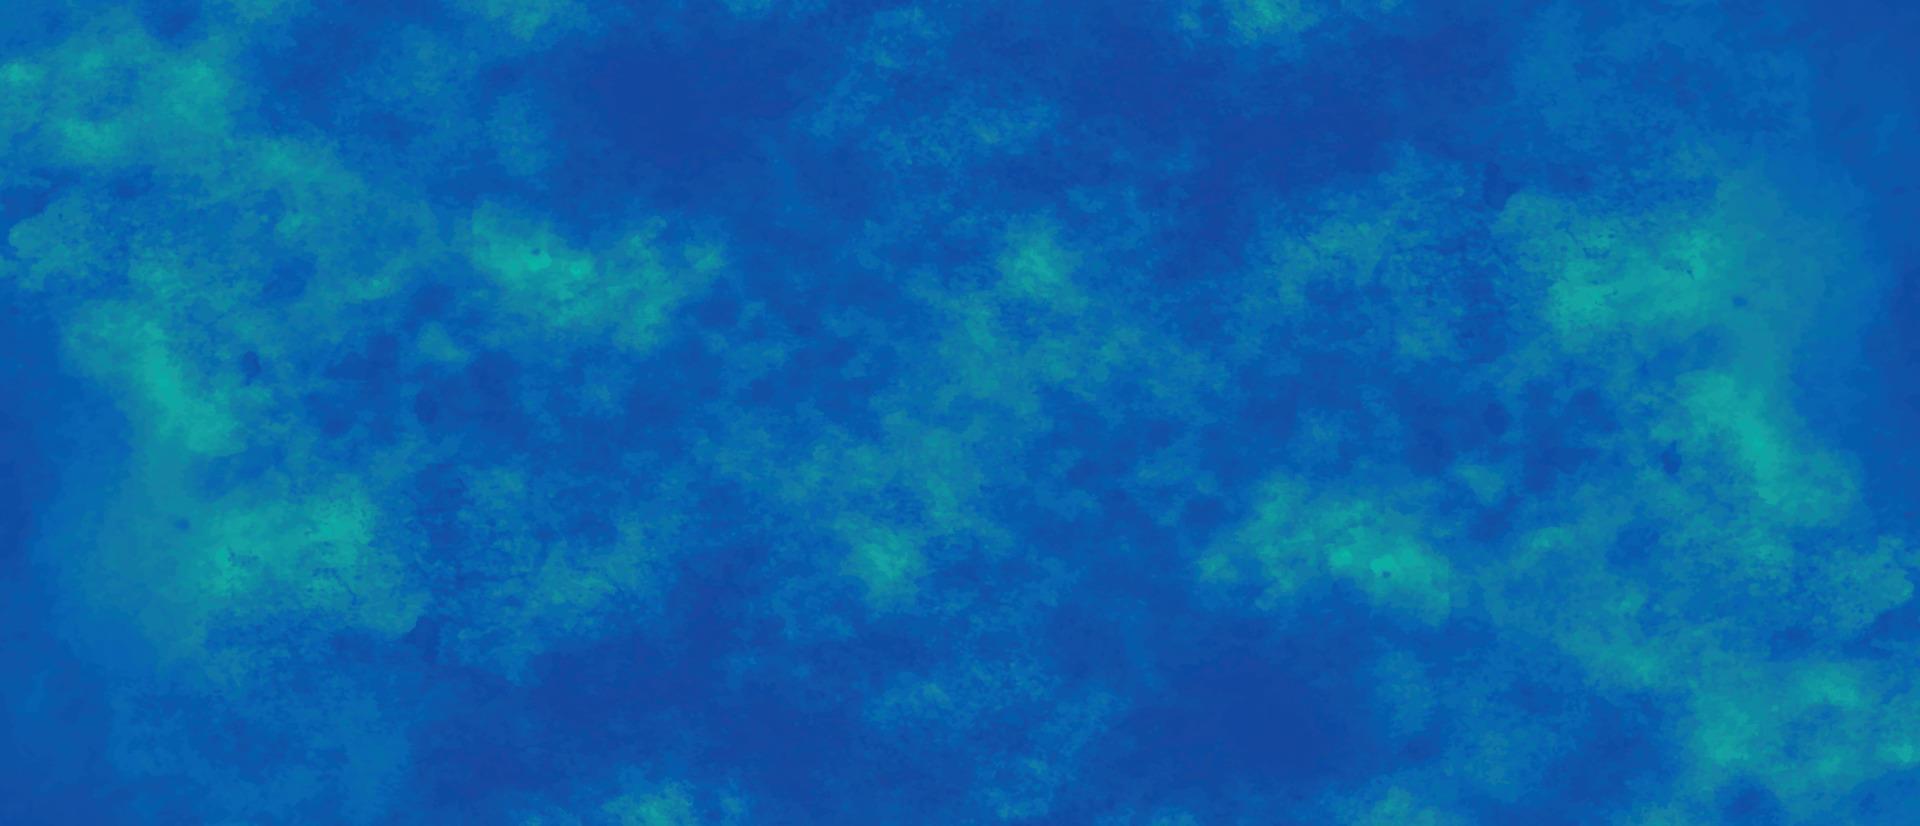 fundo de fumaça azul escuro, aquarela azul marinho e textura de papel. linda mão escura gradiente desenhada pelo fundo do pincel grunge. aquarela lavagem aqua pintado textura close-up, design sujo. vetor